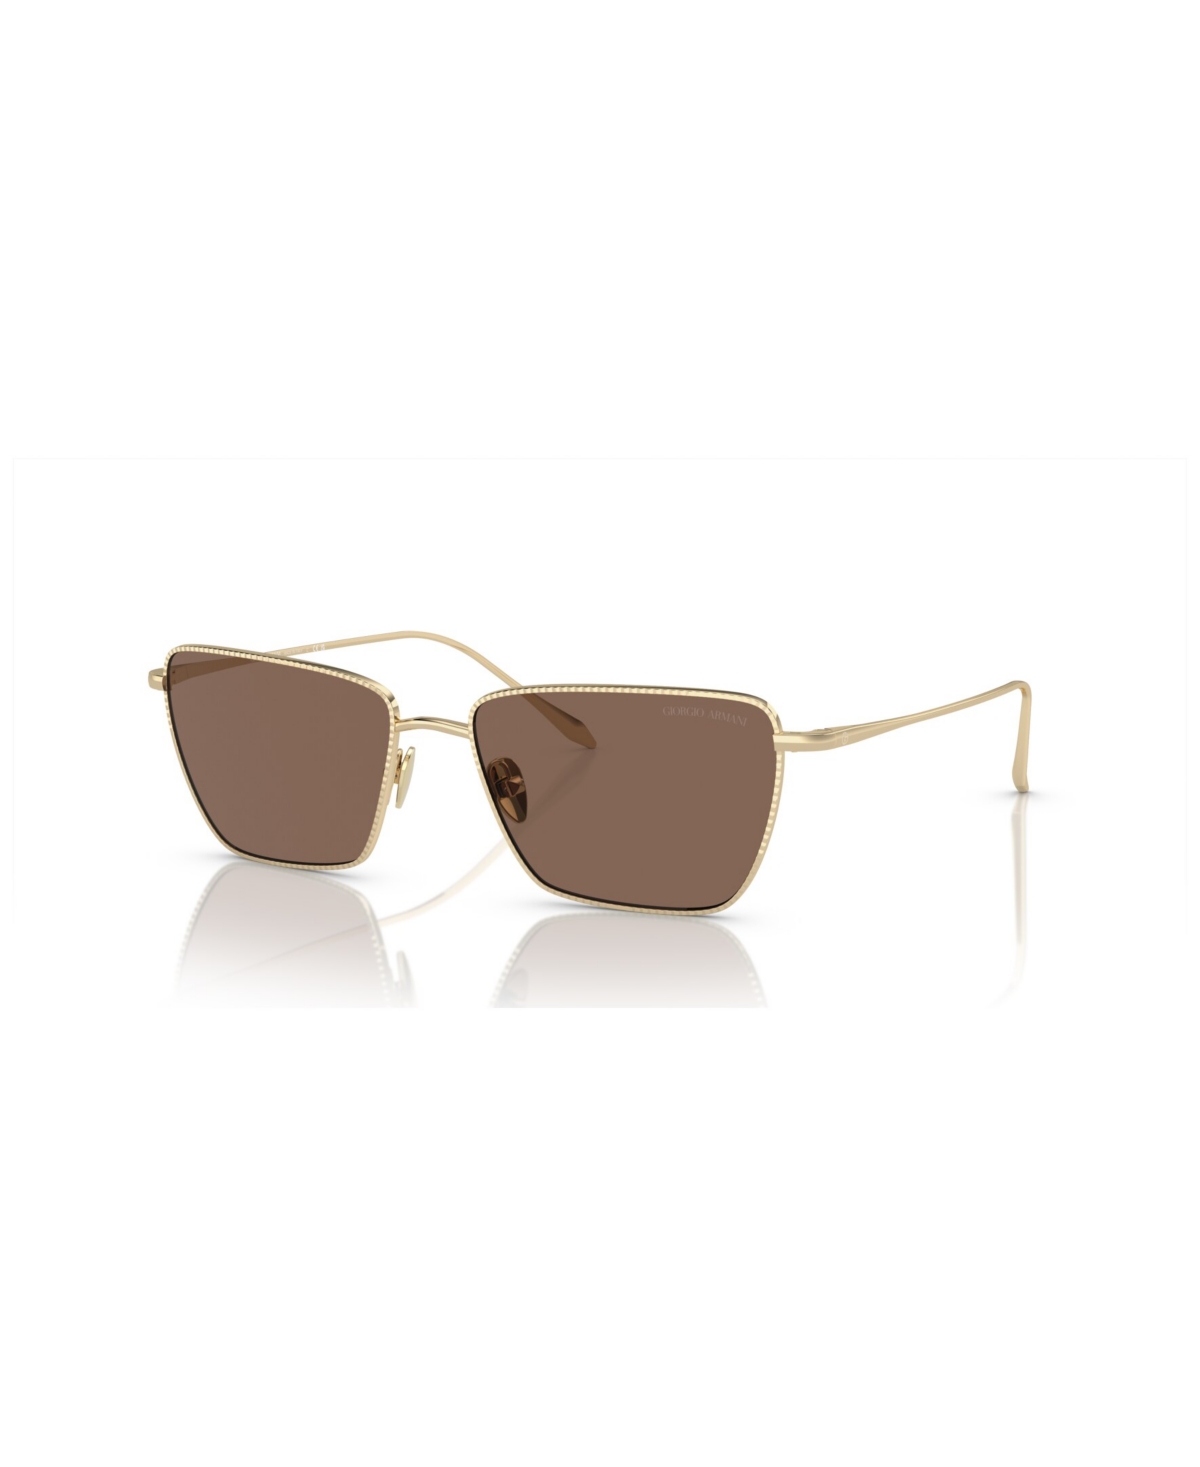 Giorgio Armani Women's Sunglasses Ar6153 In Pale Gold